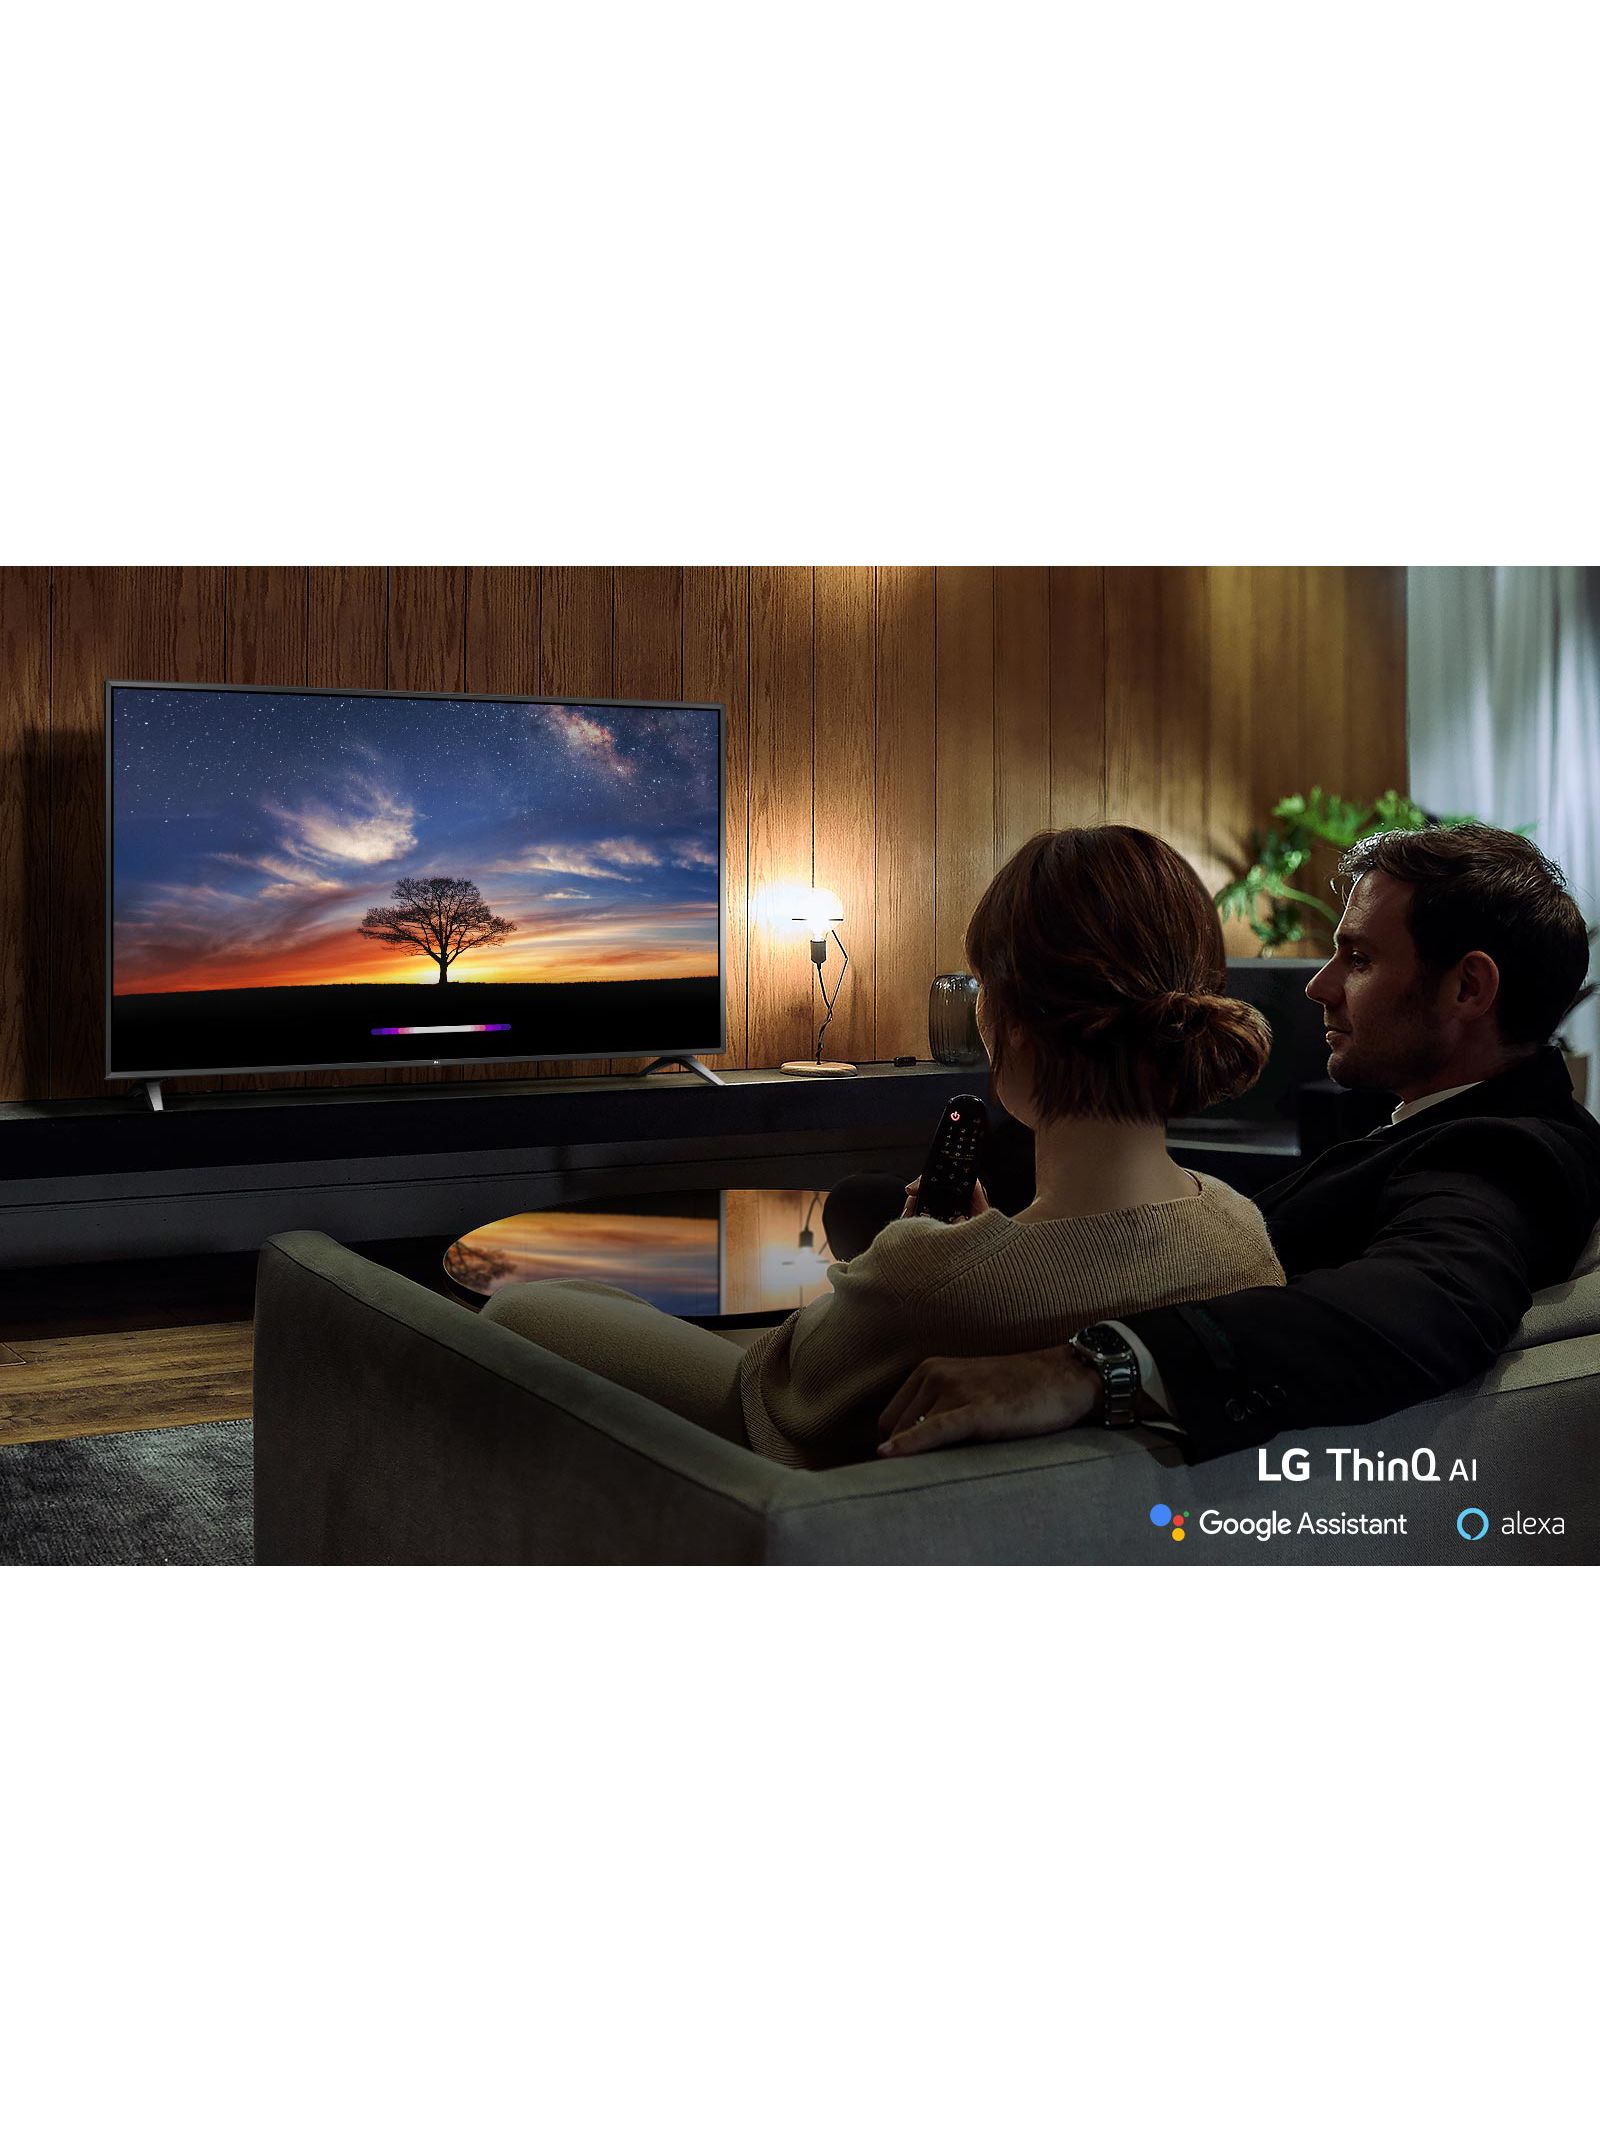 LG 4Kテレビ 2019年モデル 43UM7500 テレビ/映像機器 テレビ テレビ